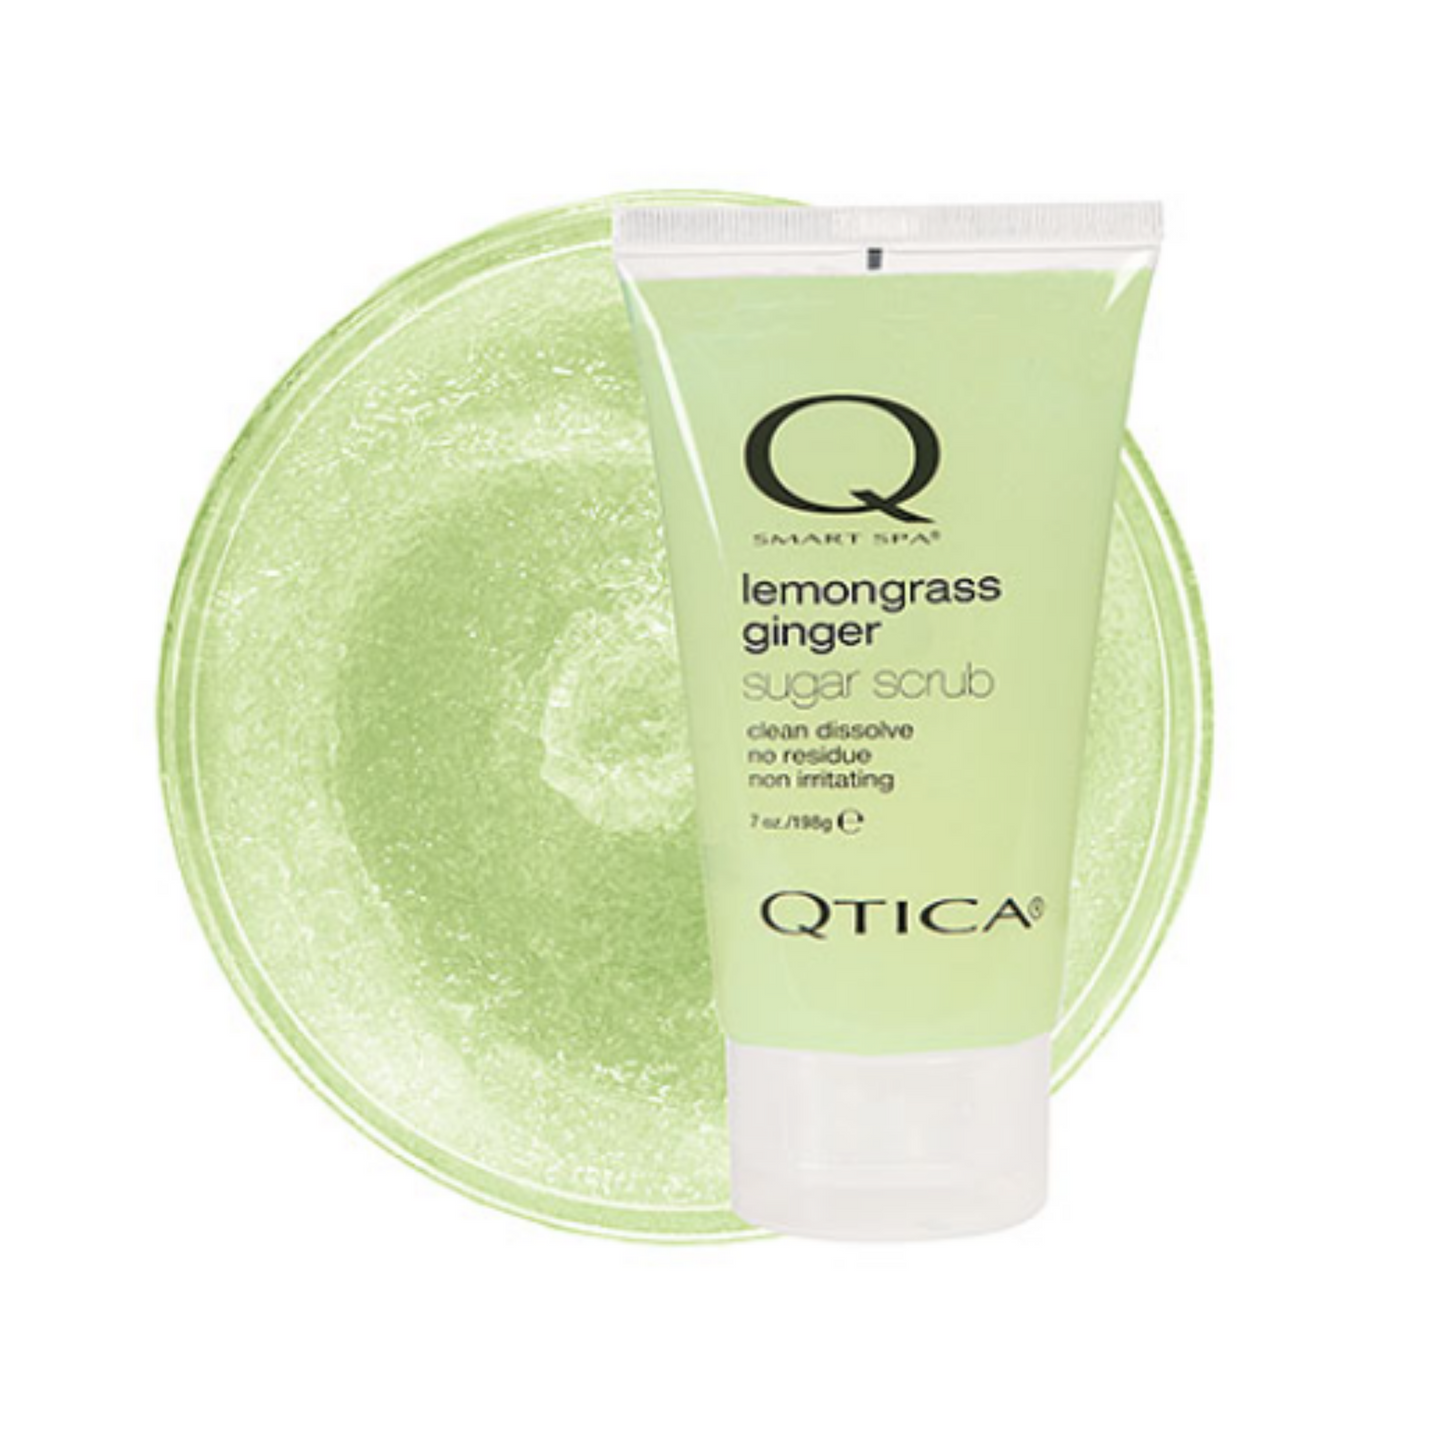 Qtica Smart Spa Lemongrass Ginger Sugar Scrub